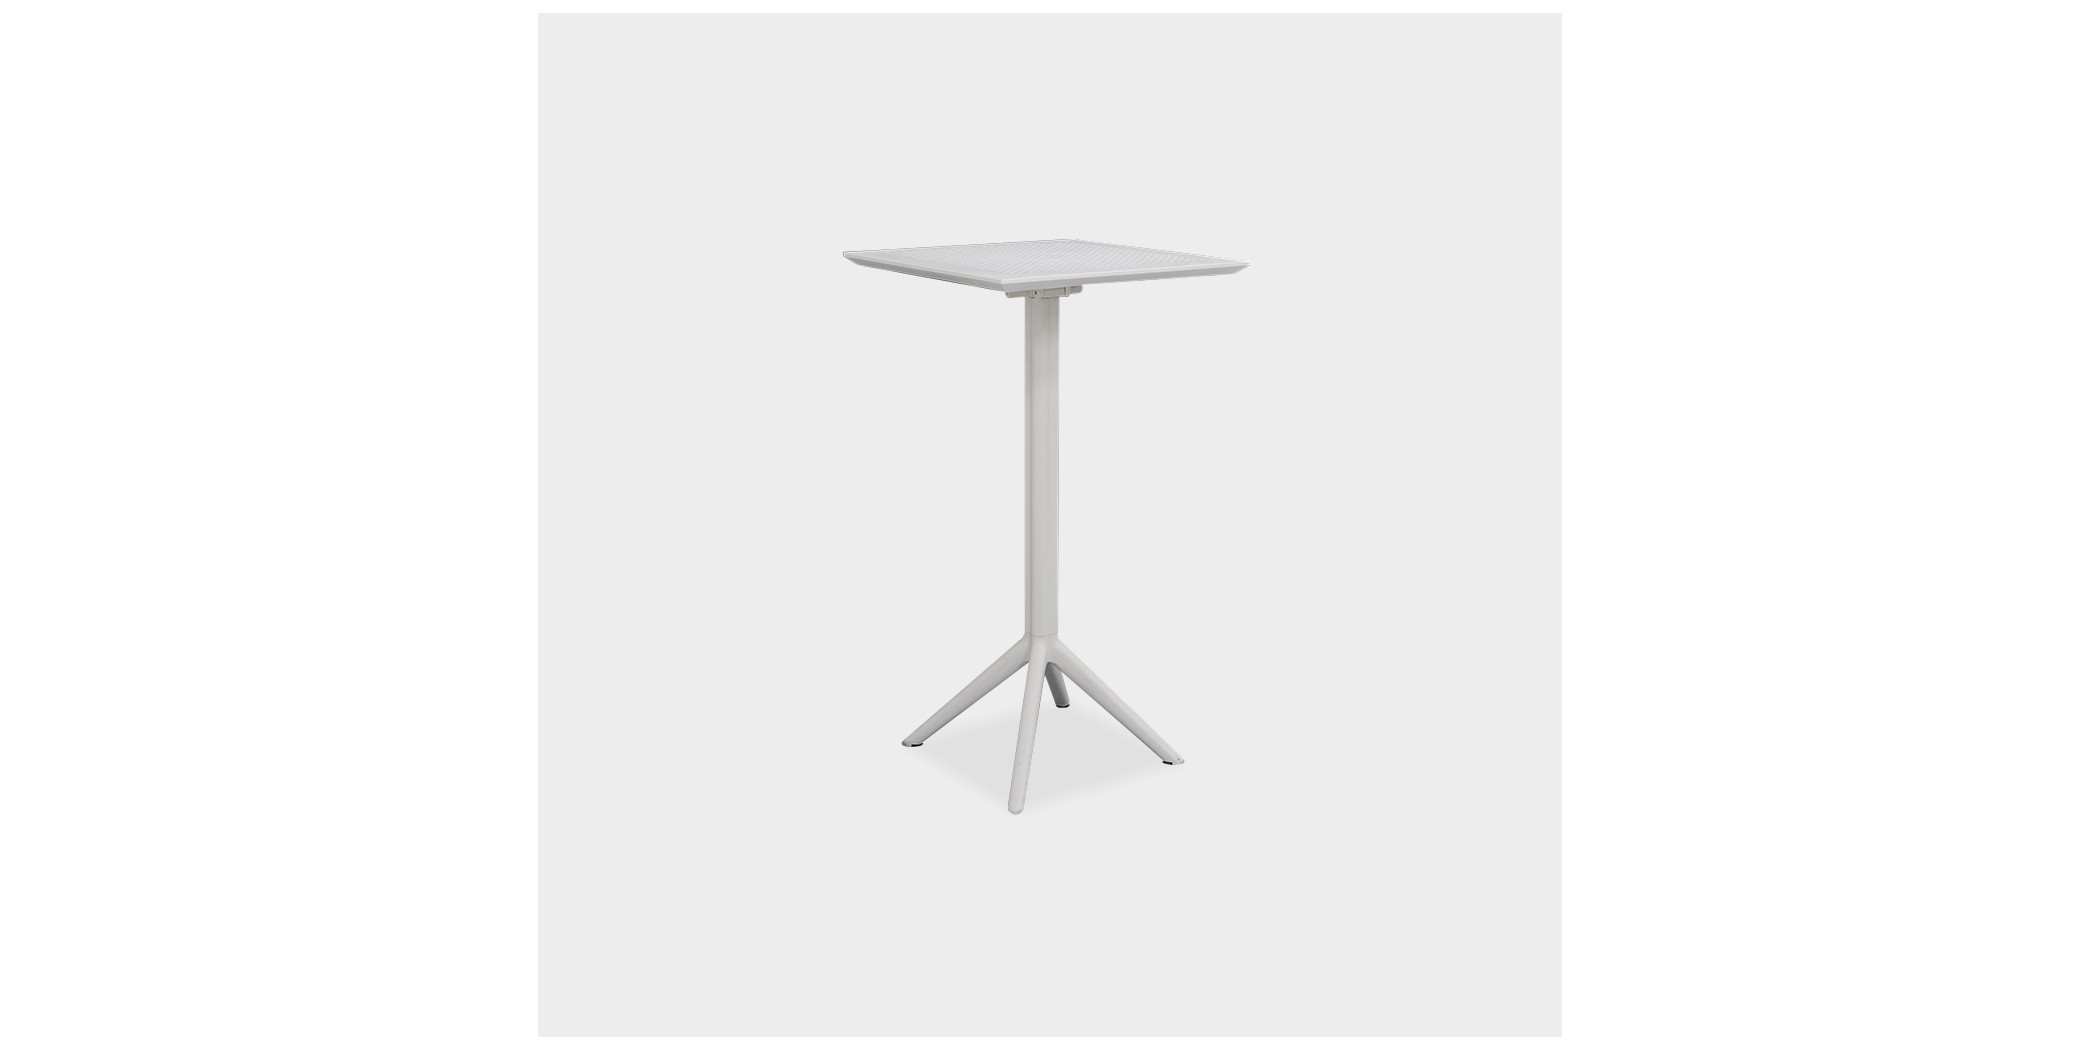 Siesta Sky Folding Bar Table White 60x60cm Ref 116